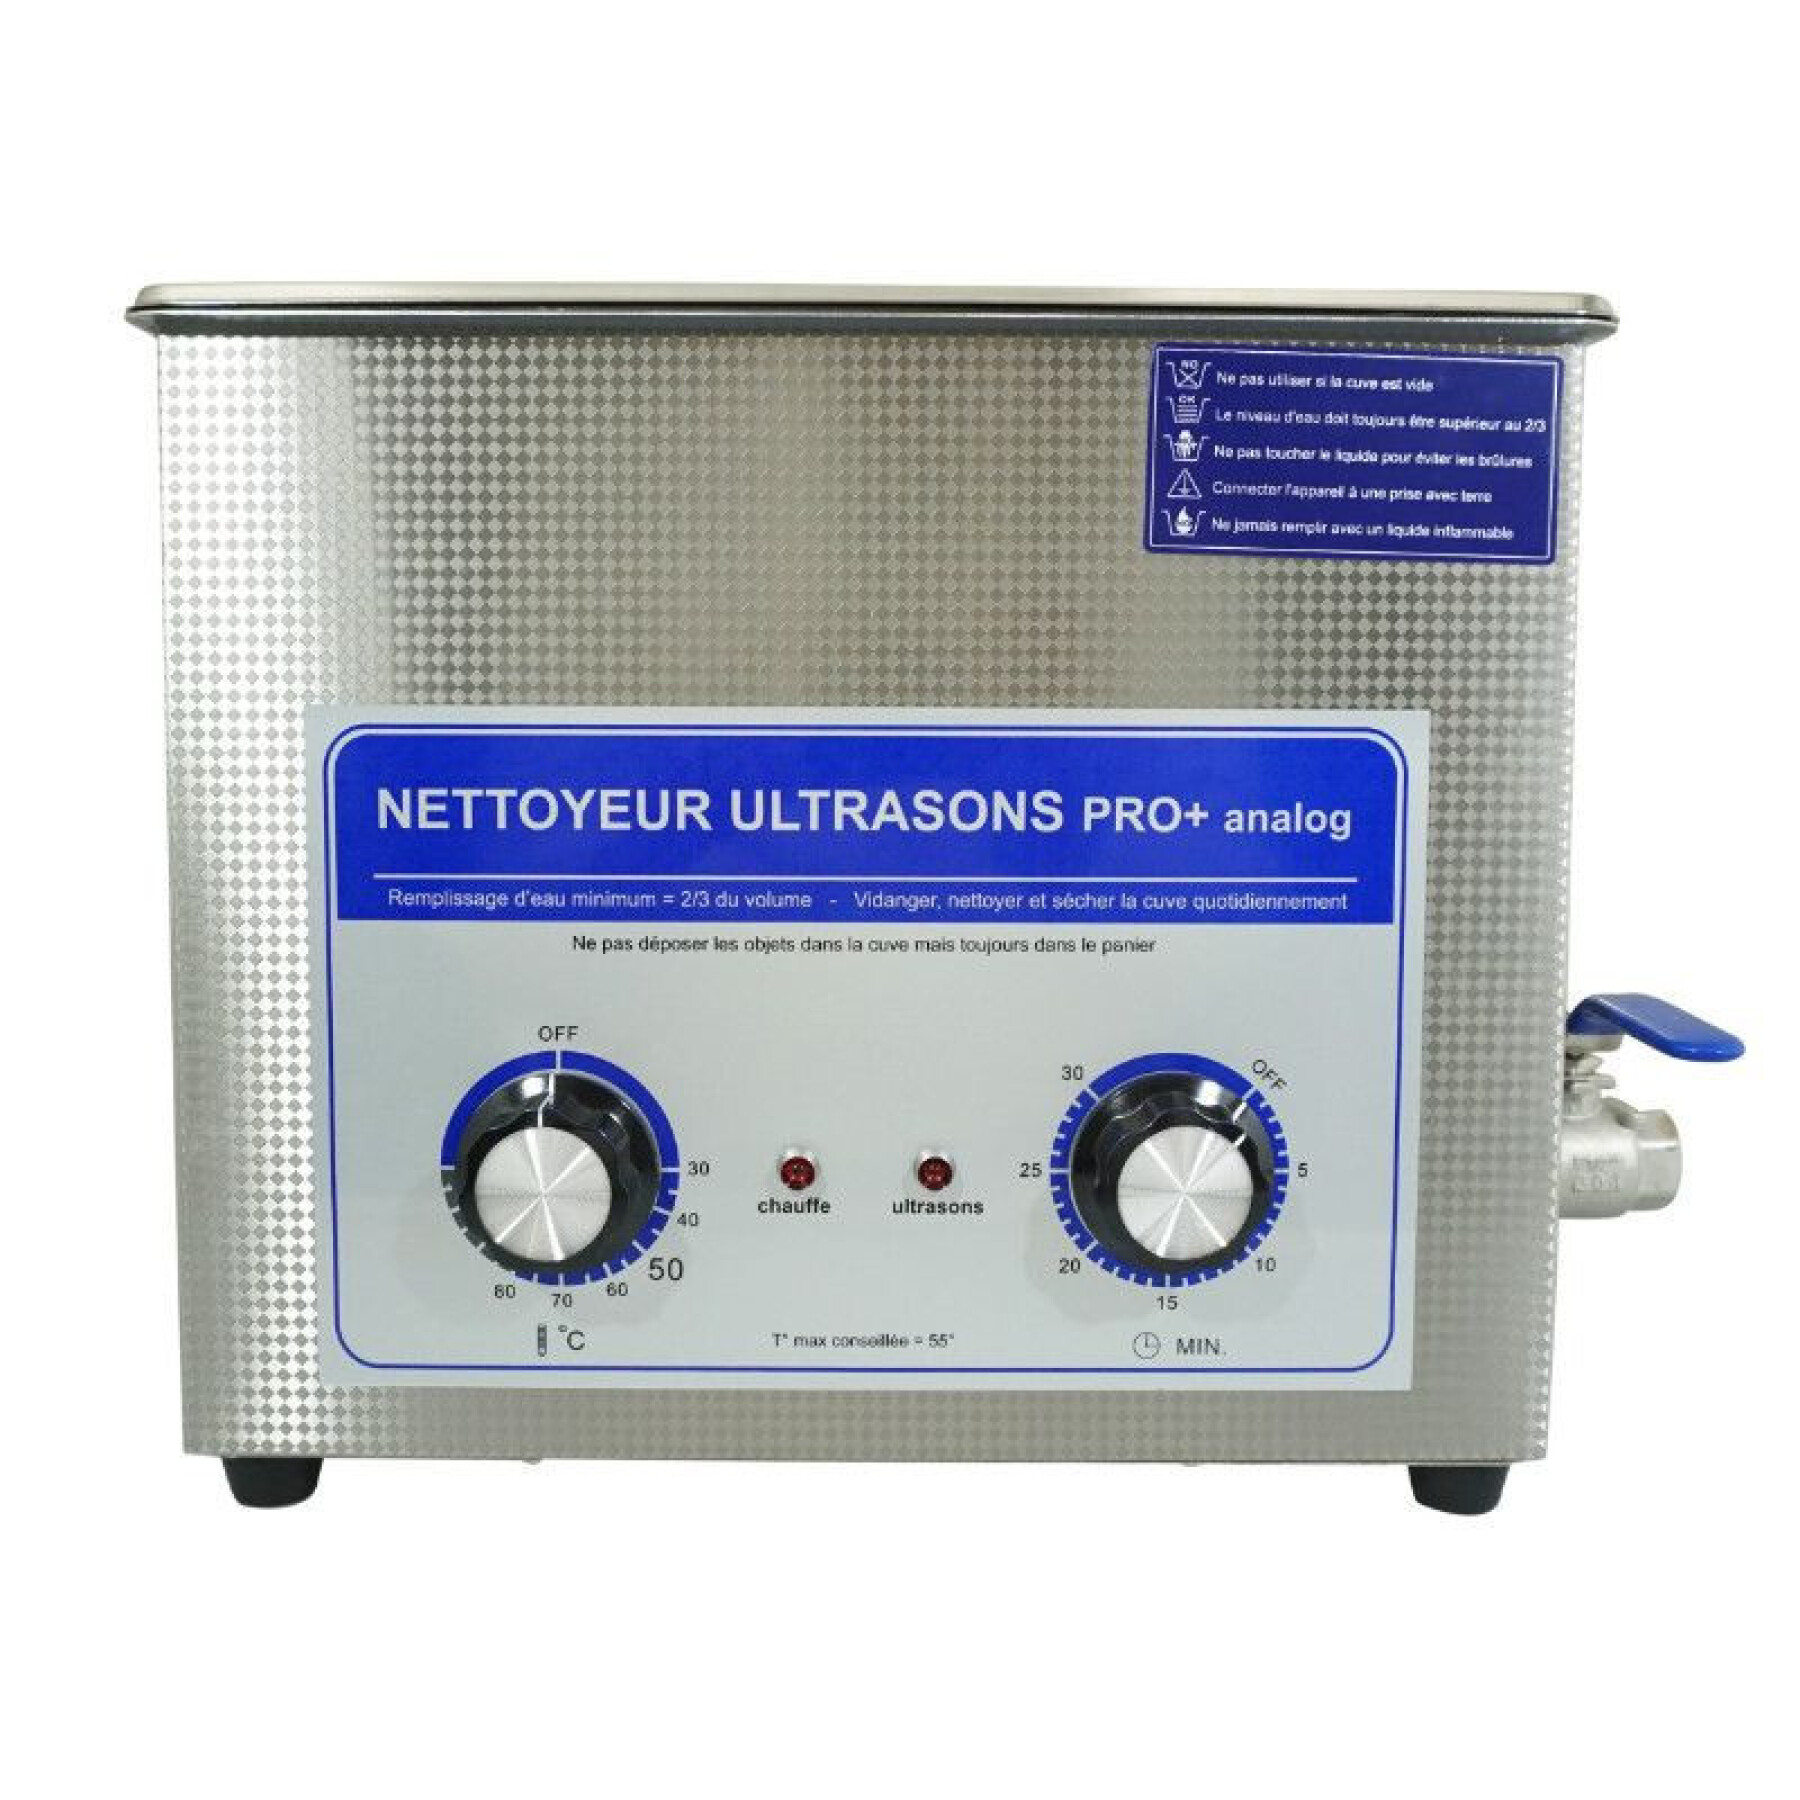 Nettoyeur-bac ultrasons professionnel analogique avec vanne de vidange P2R 6 L 180 W